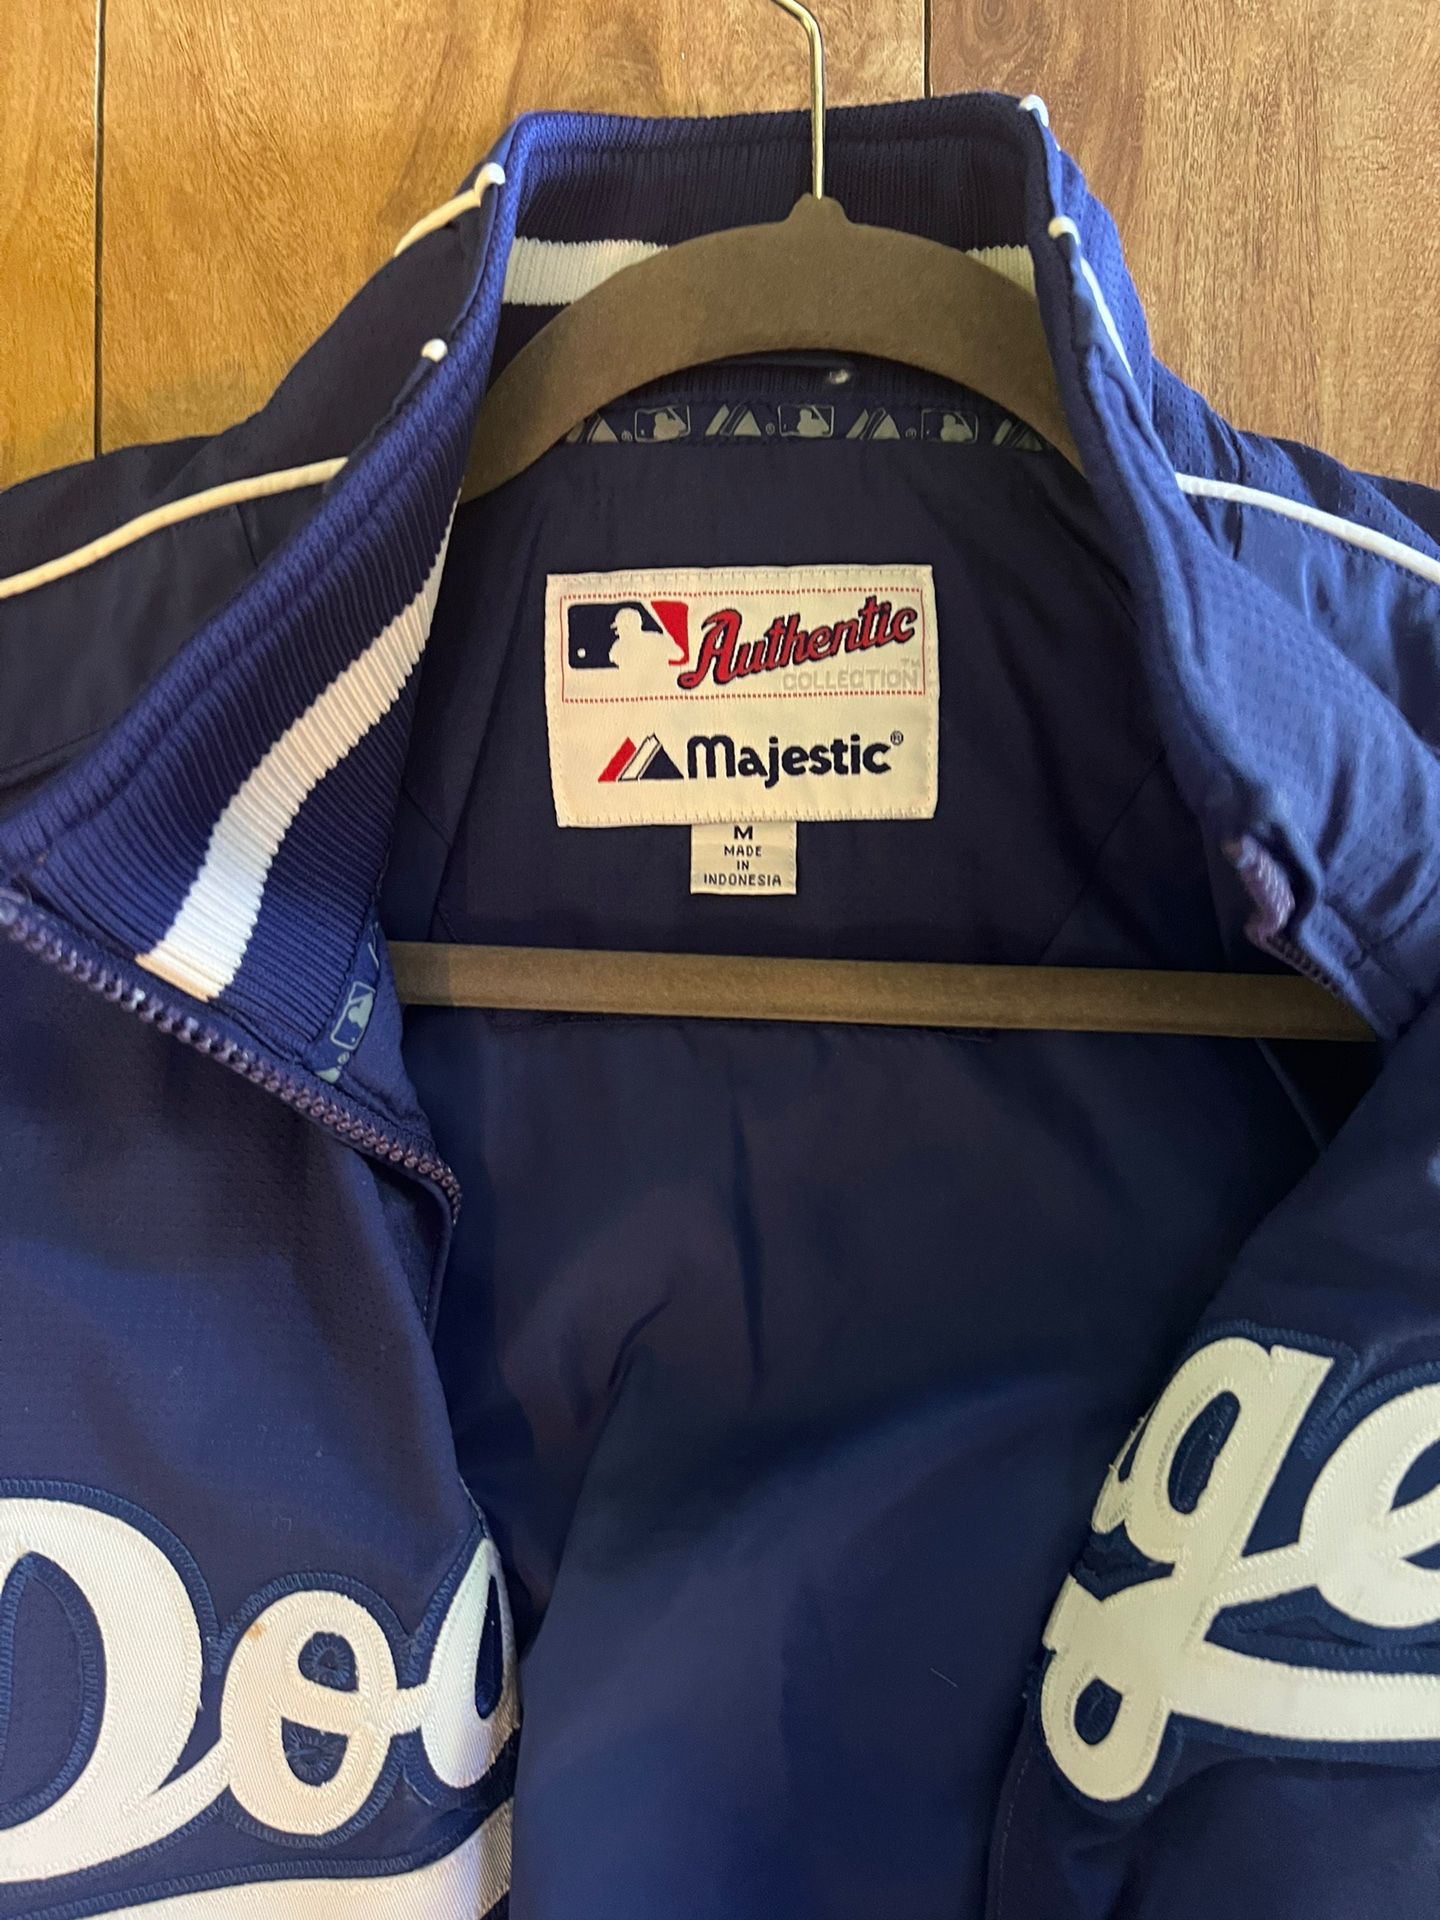 LA Dodgers Jacket for Sale in Long Beach, CA - OfferUp